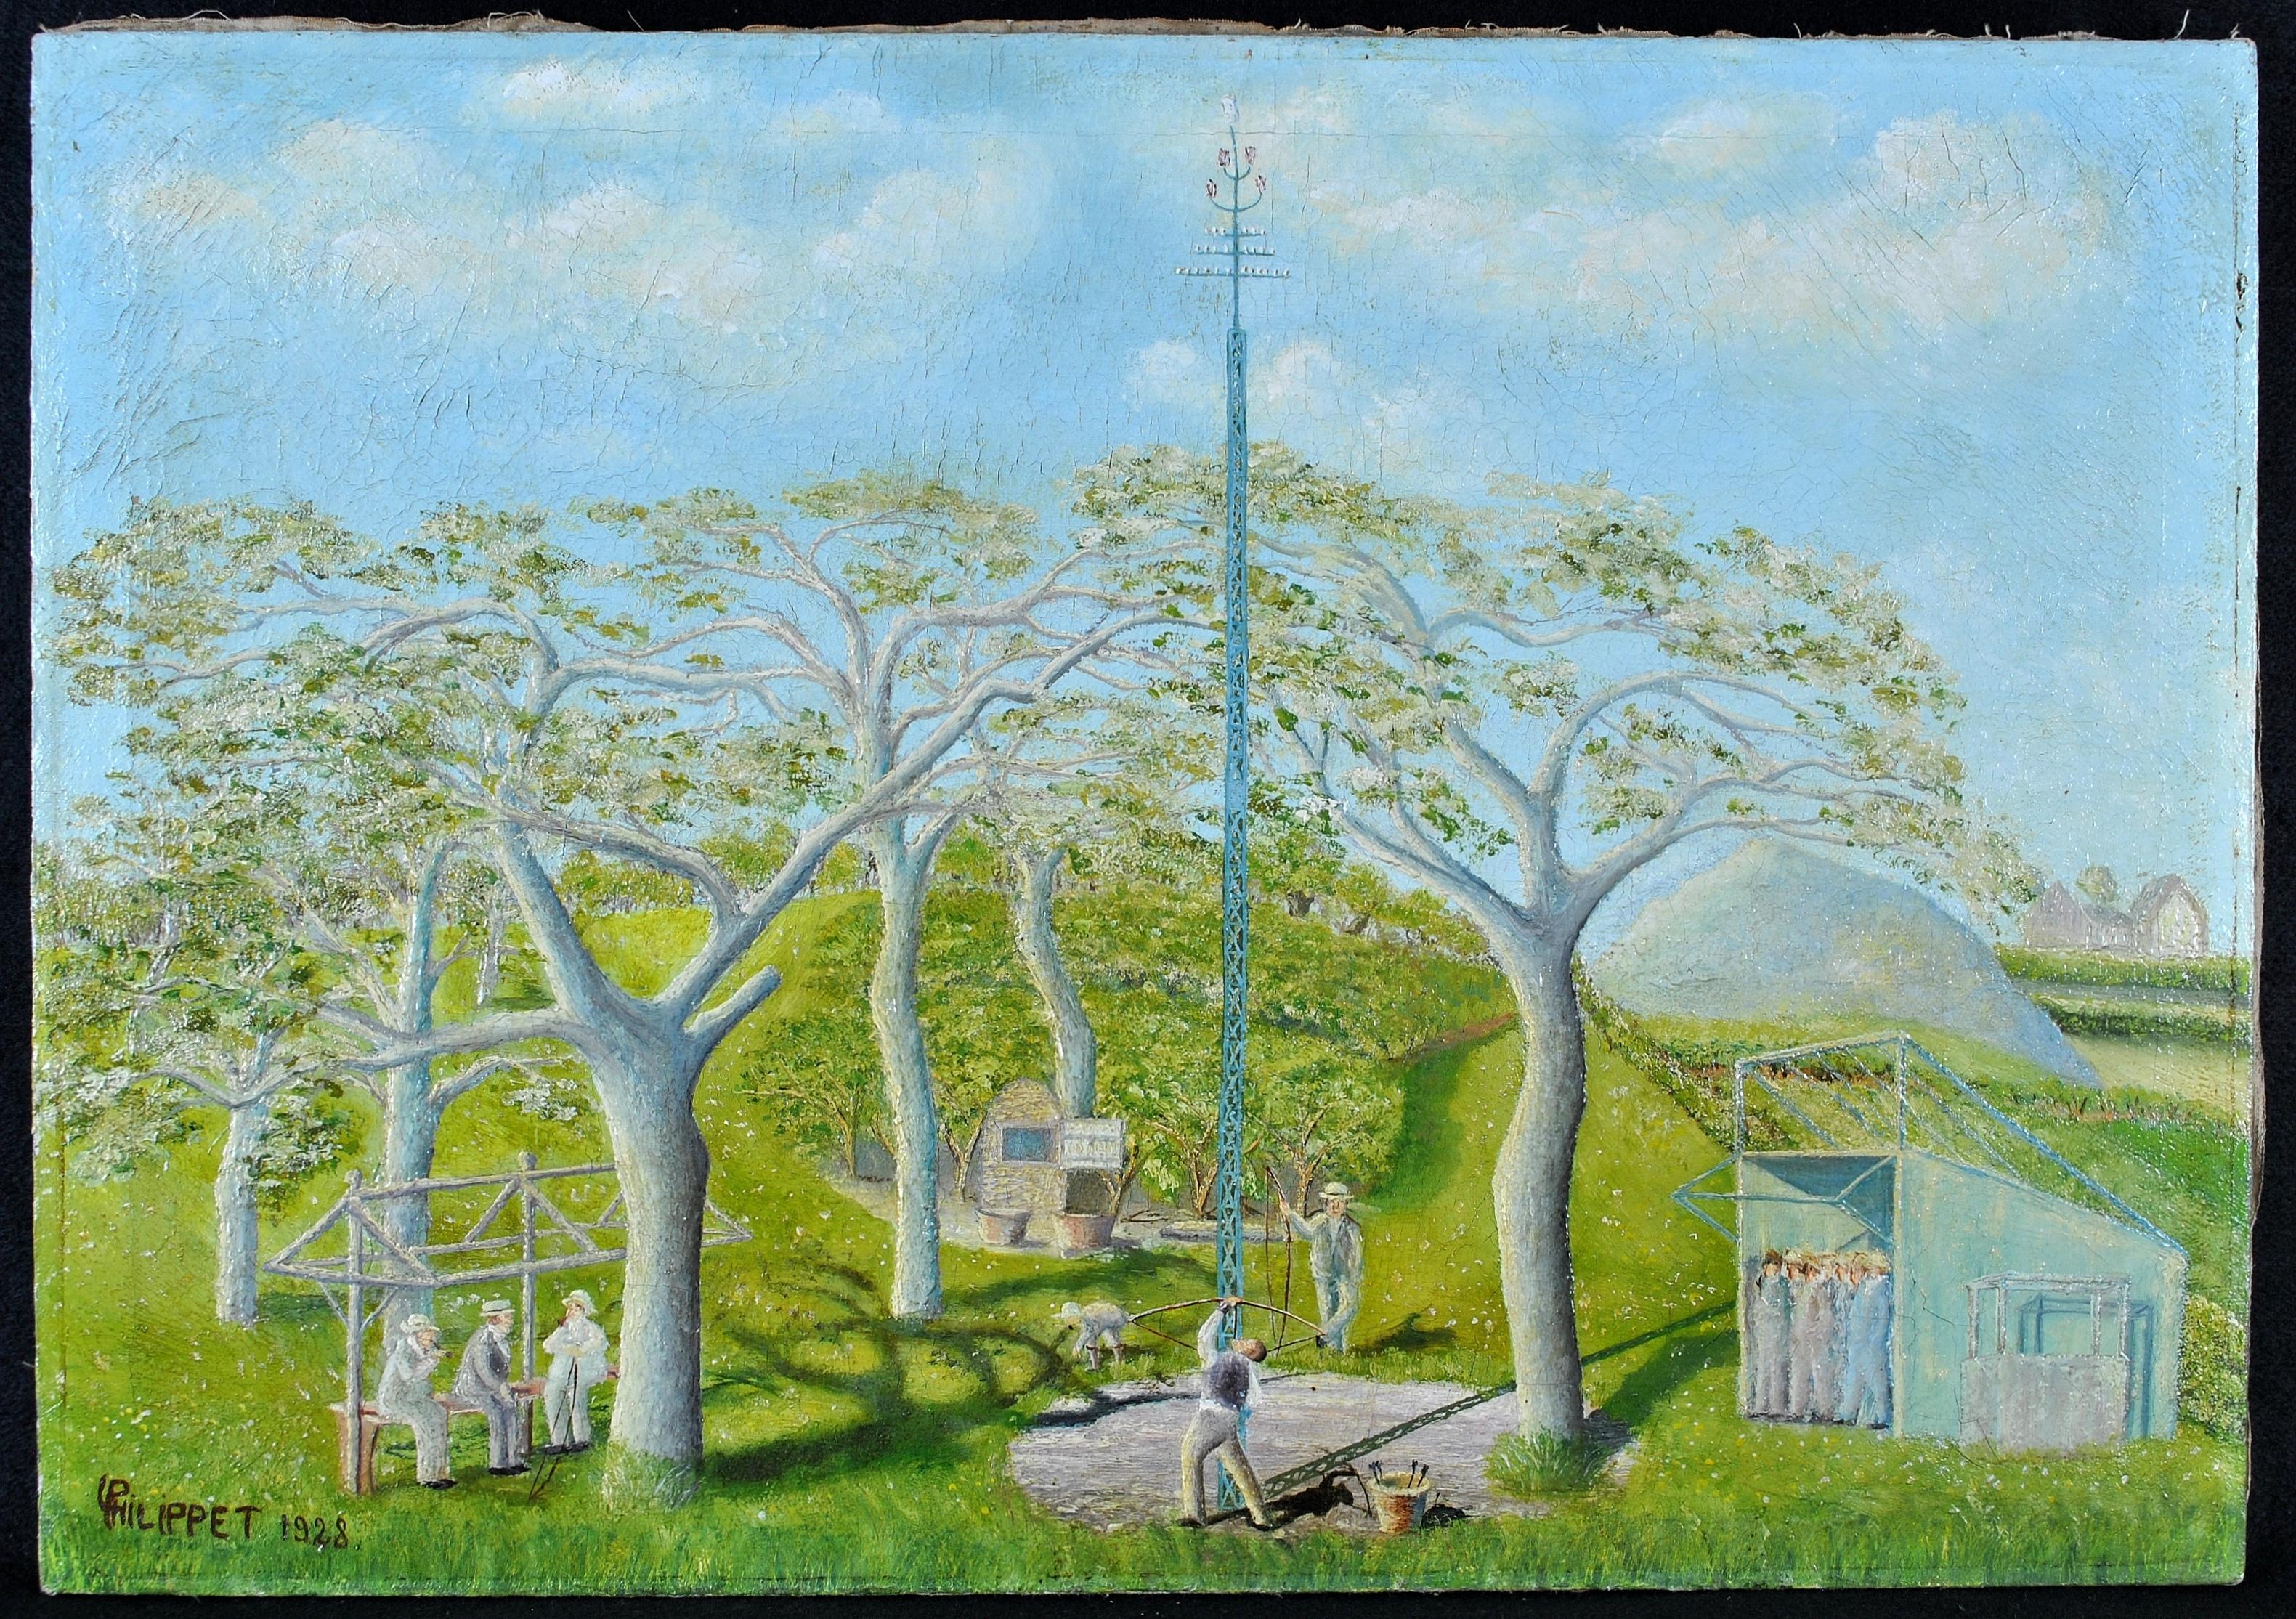 Match de tir à l'arc - Début du 20e siècle, peinture ancienne française à l'huile sur toile de Naïf - Painting de L. Phillipet